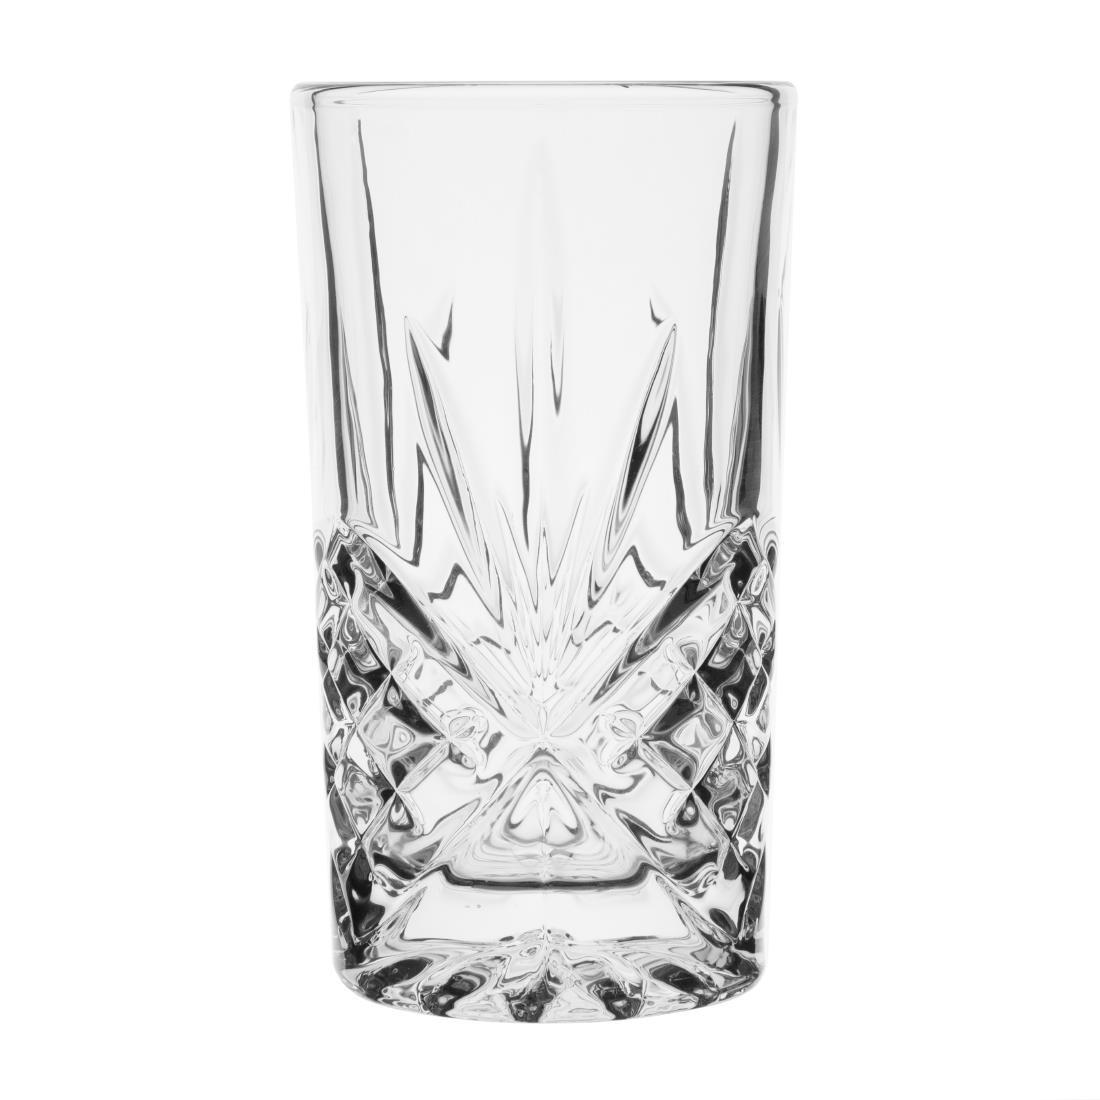 Olympia Old Duke Glass Tumblers 350ml (Pack of 6) - CW392  - 1